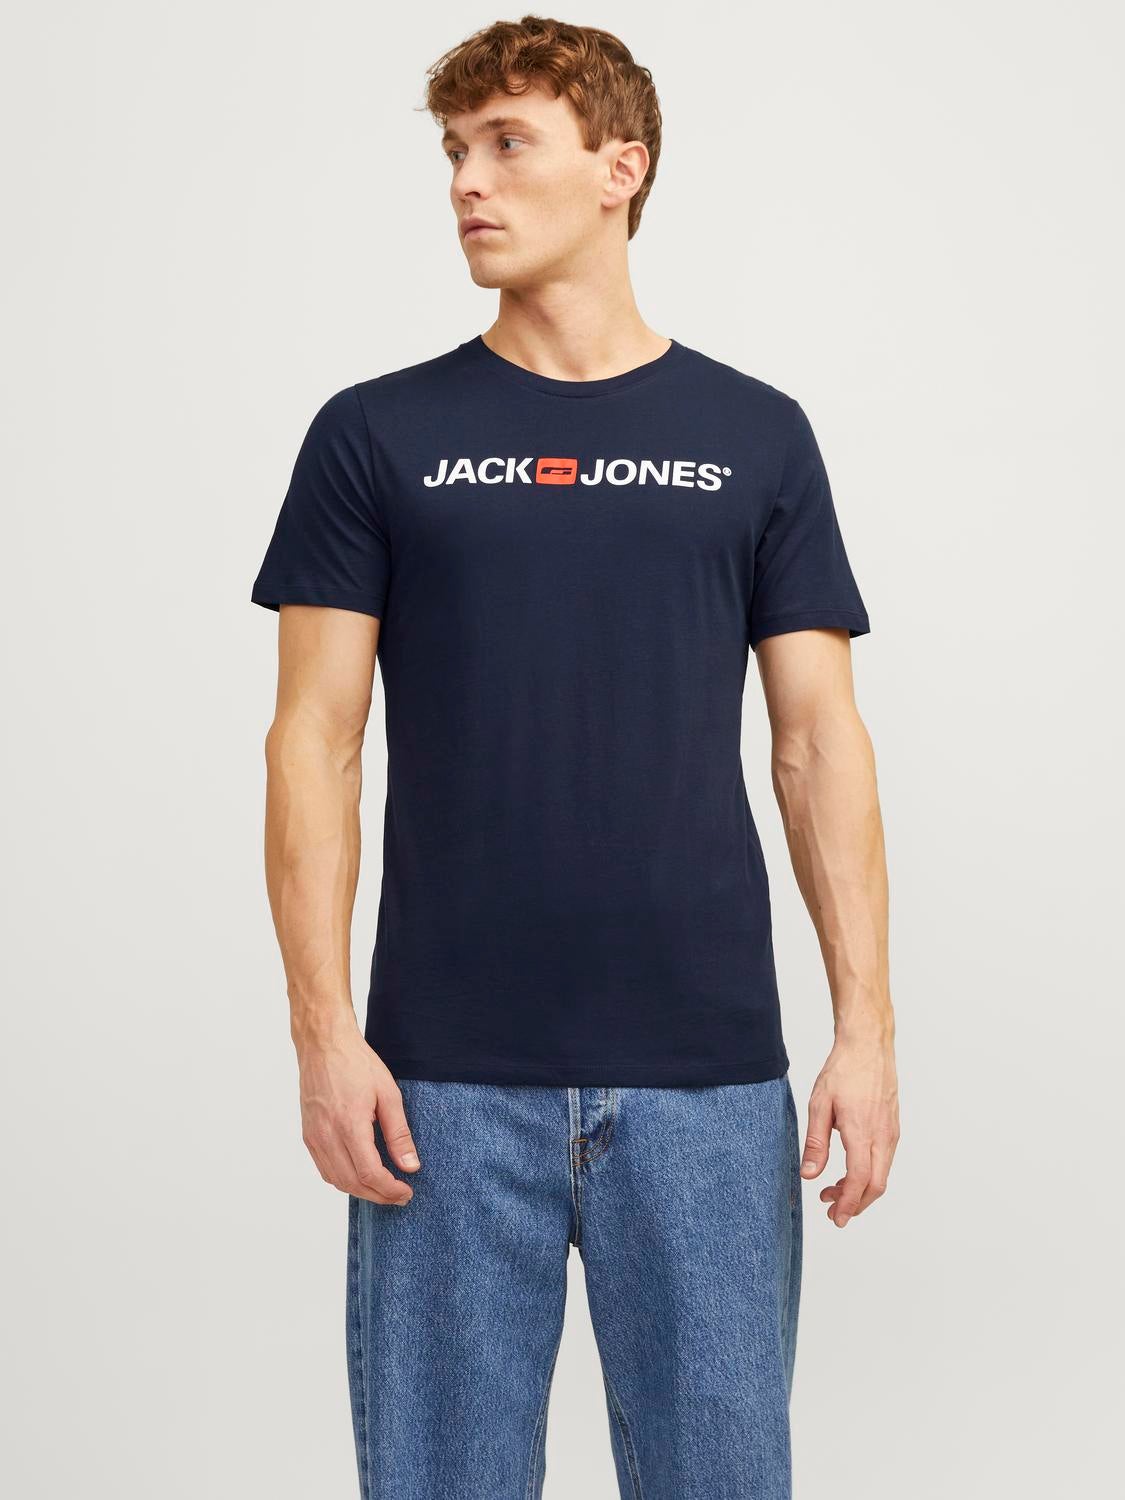 Hombre Tee-shirts Hombre Ropa y camisas Camisetas Camisetas lisas Jack Jones Camisetas lisas nationalpark-saechsische-schweiz.de